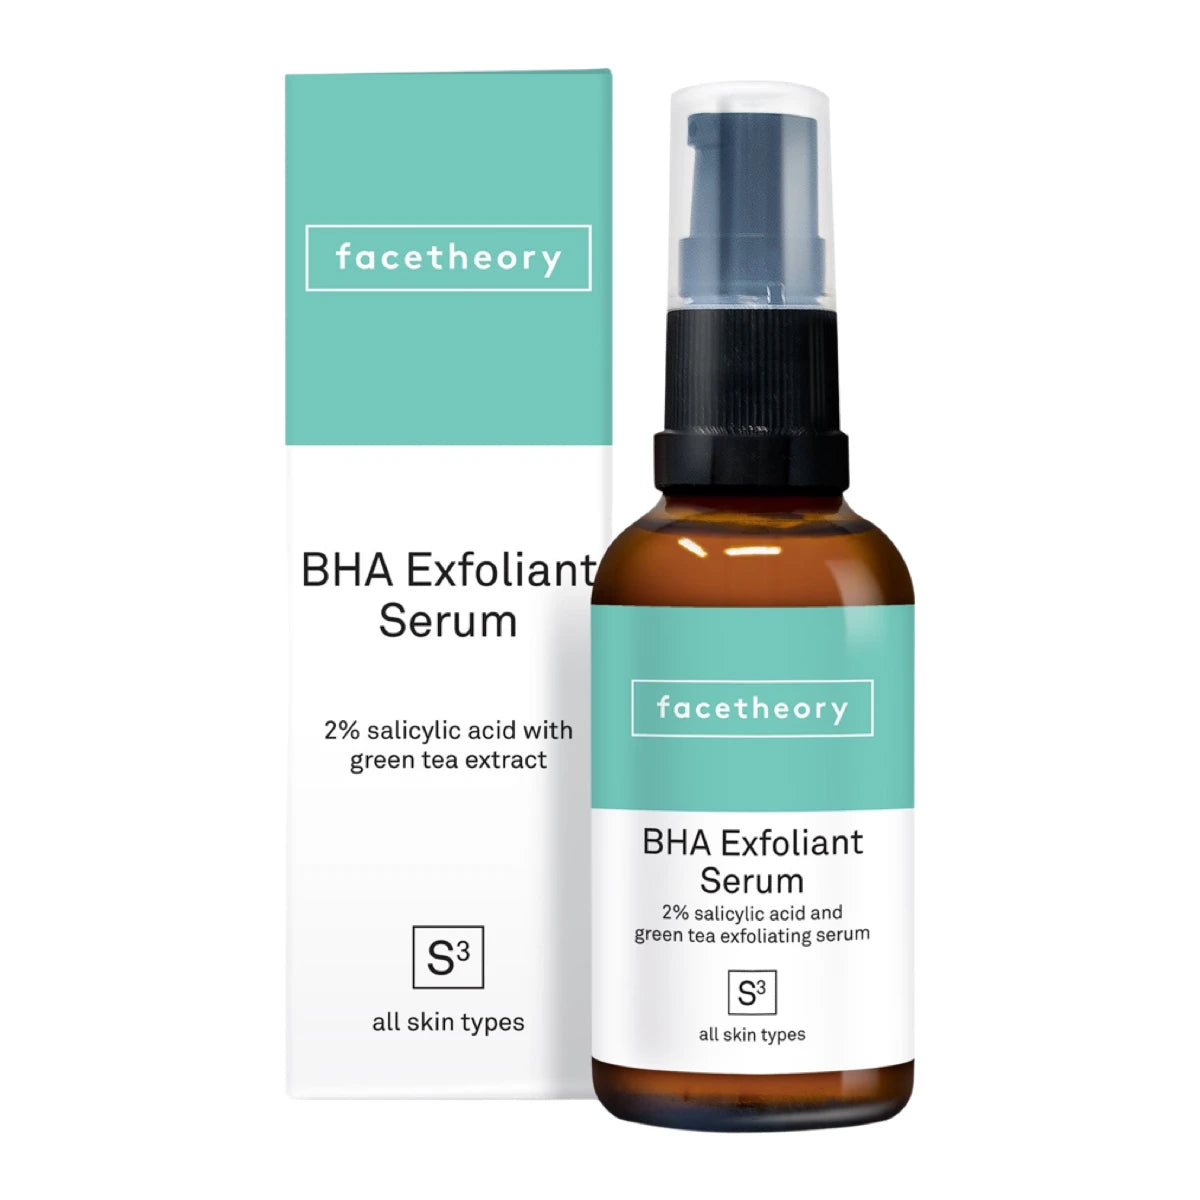 Facetheory BHA Exfoliating Serum S3 con 2% Ácido Salicílico y Extracto de Té Verde 30 ml